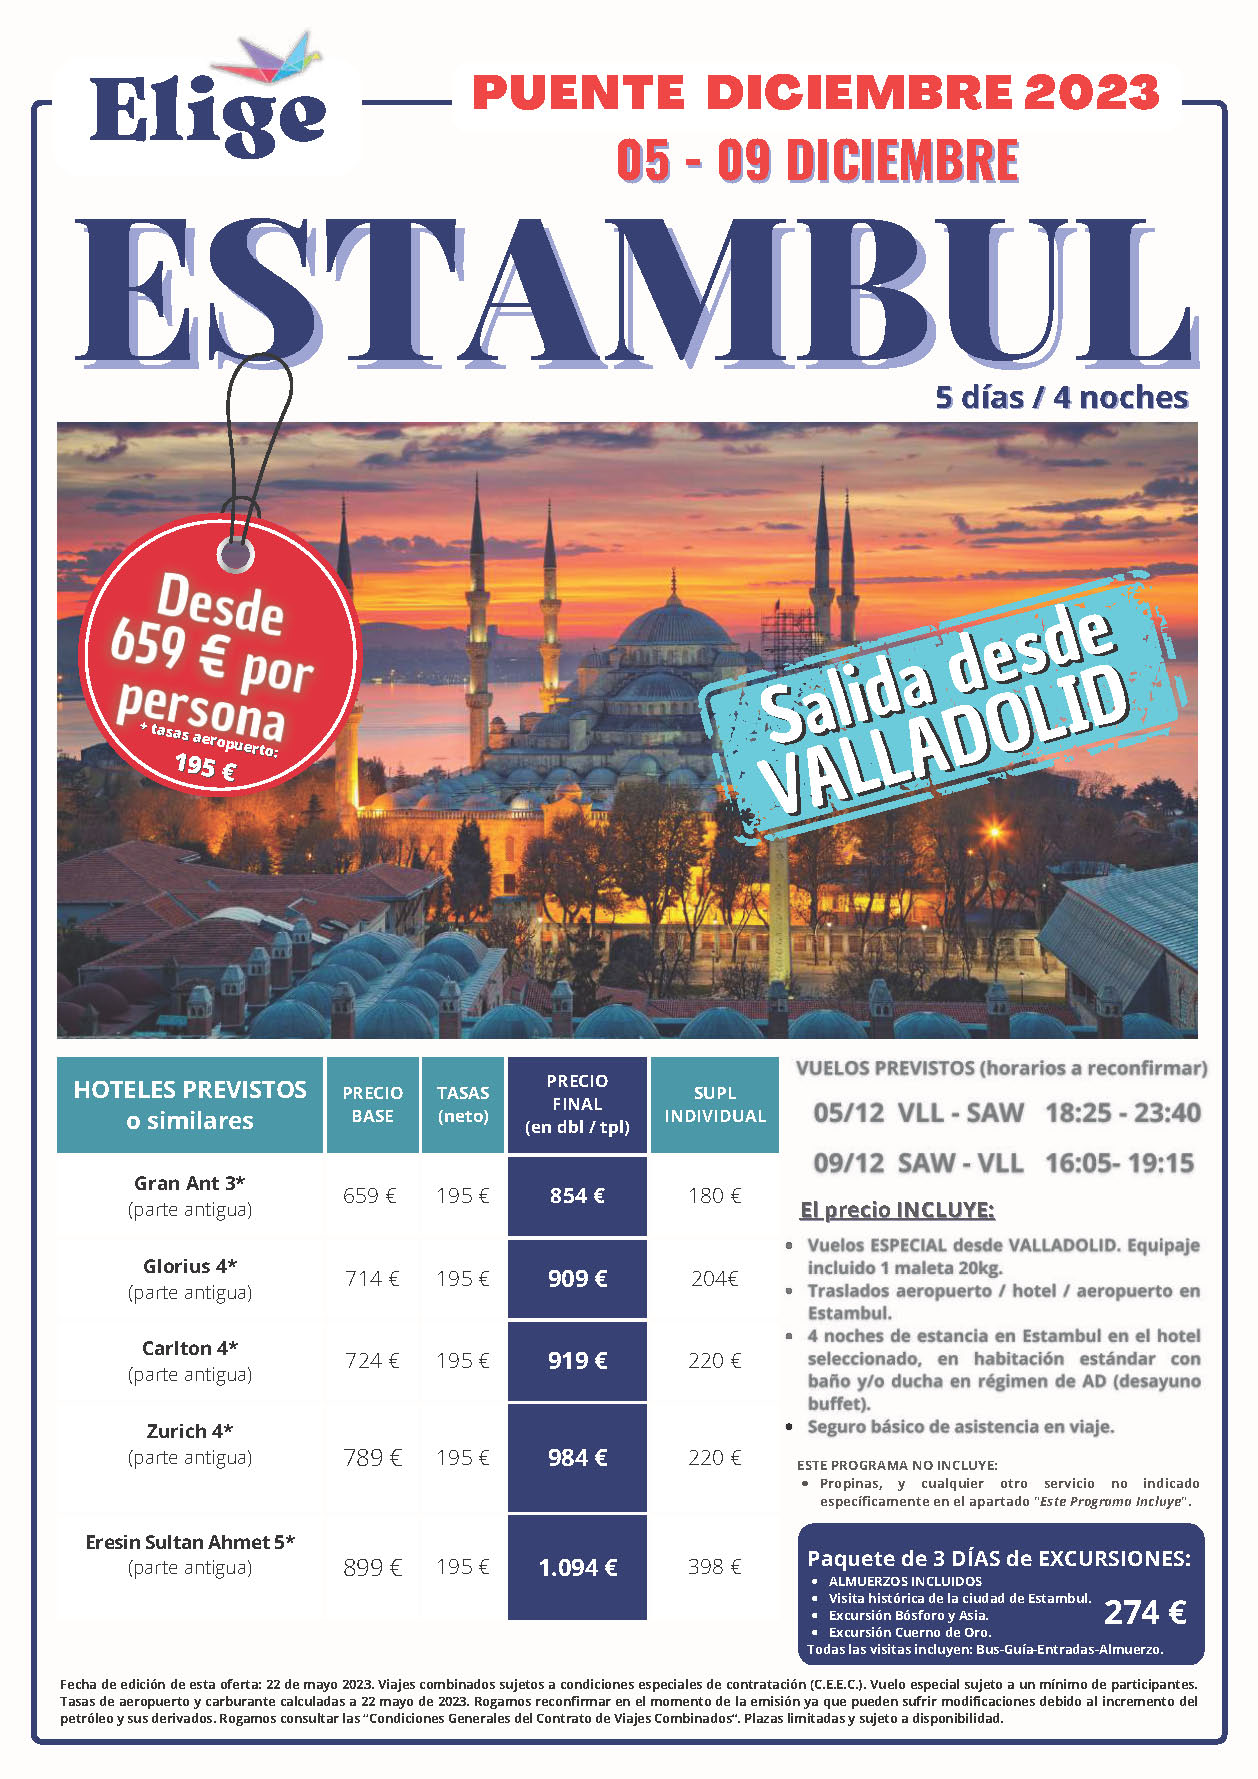 Oferta Elige tu Viaje Puente de Diciembre 2023 Turquia Estancia en Estambul 5 dias salida 5 diciembre en vuelo directo desde Valladolid